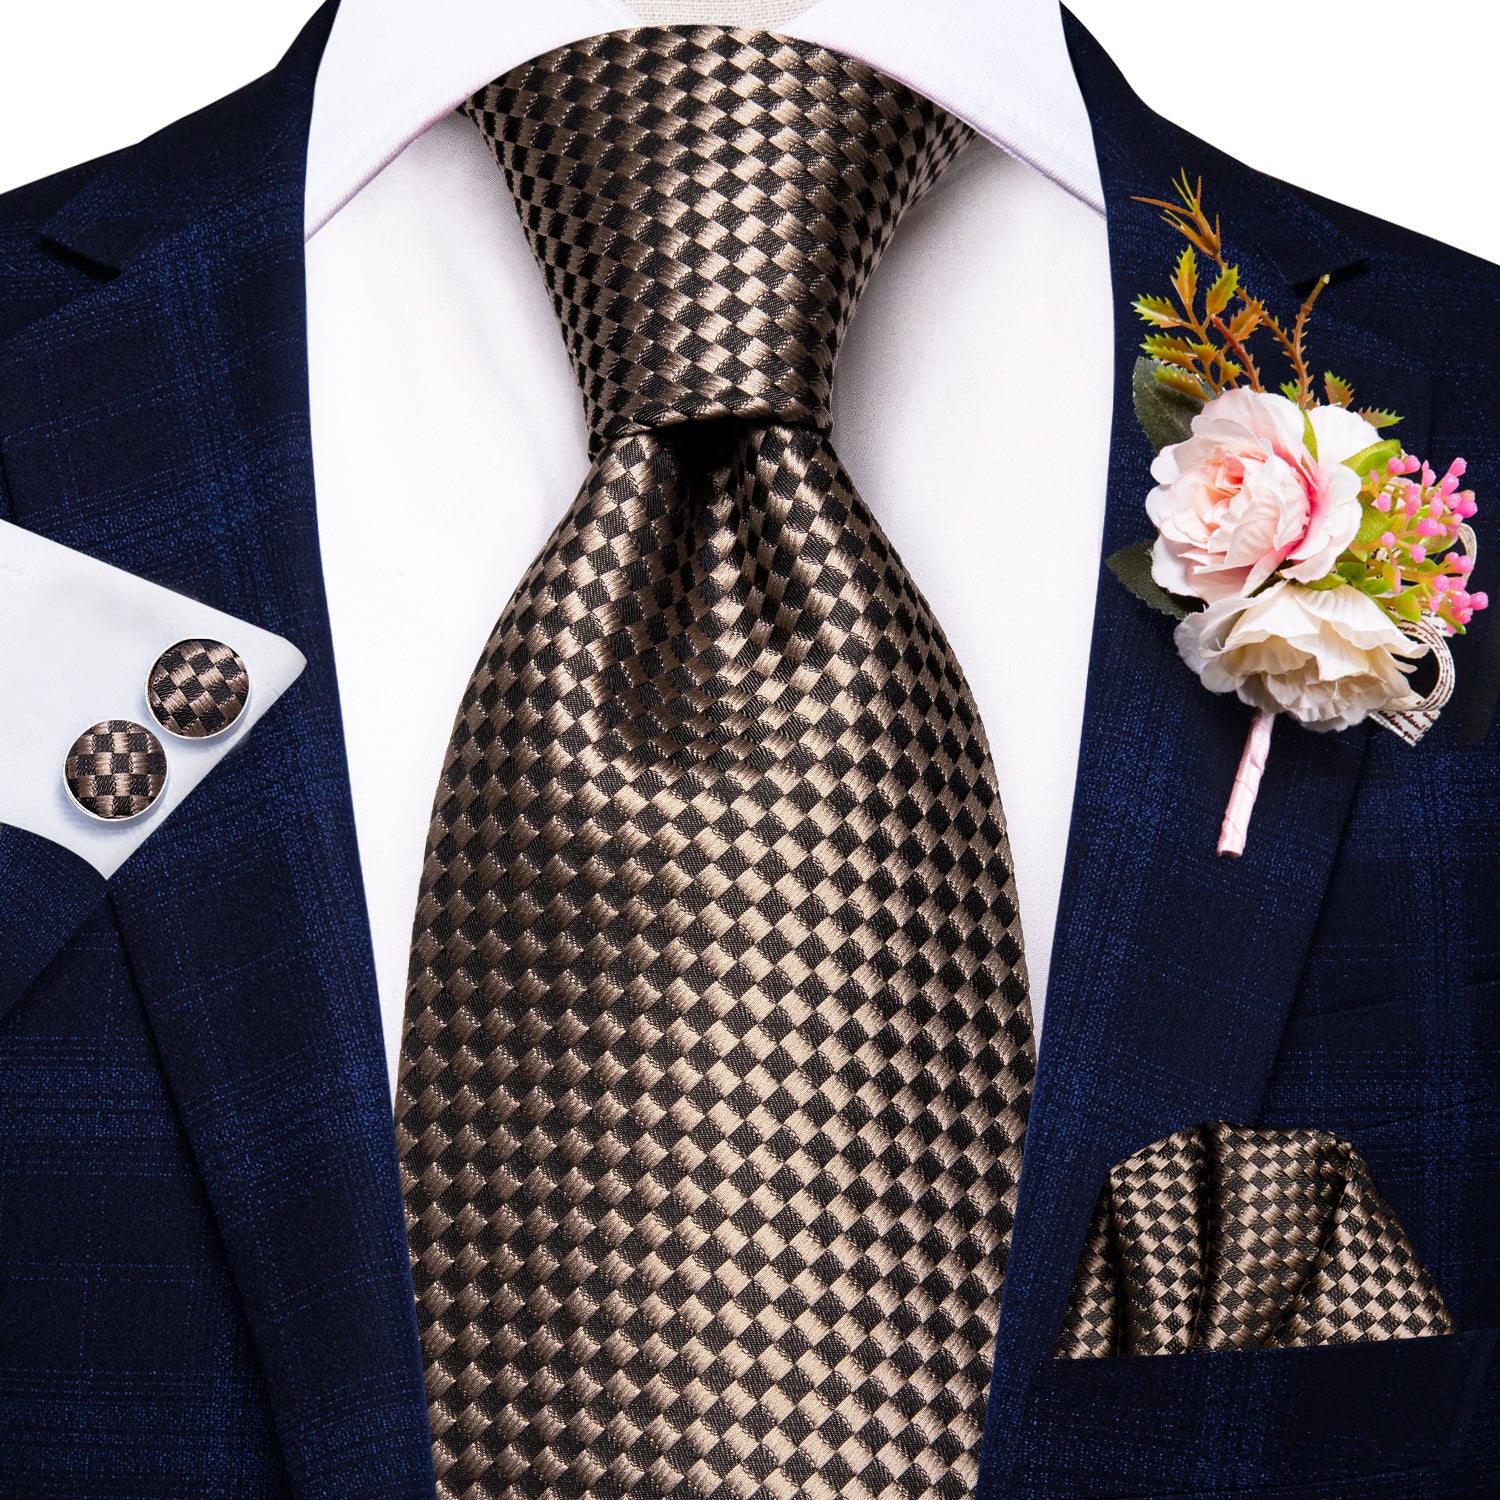 Champagne Brown Plaid Tie Handkerchief Cufflinks Set with Wedding Brooch